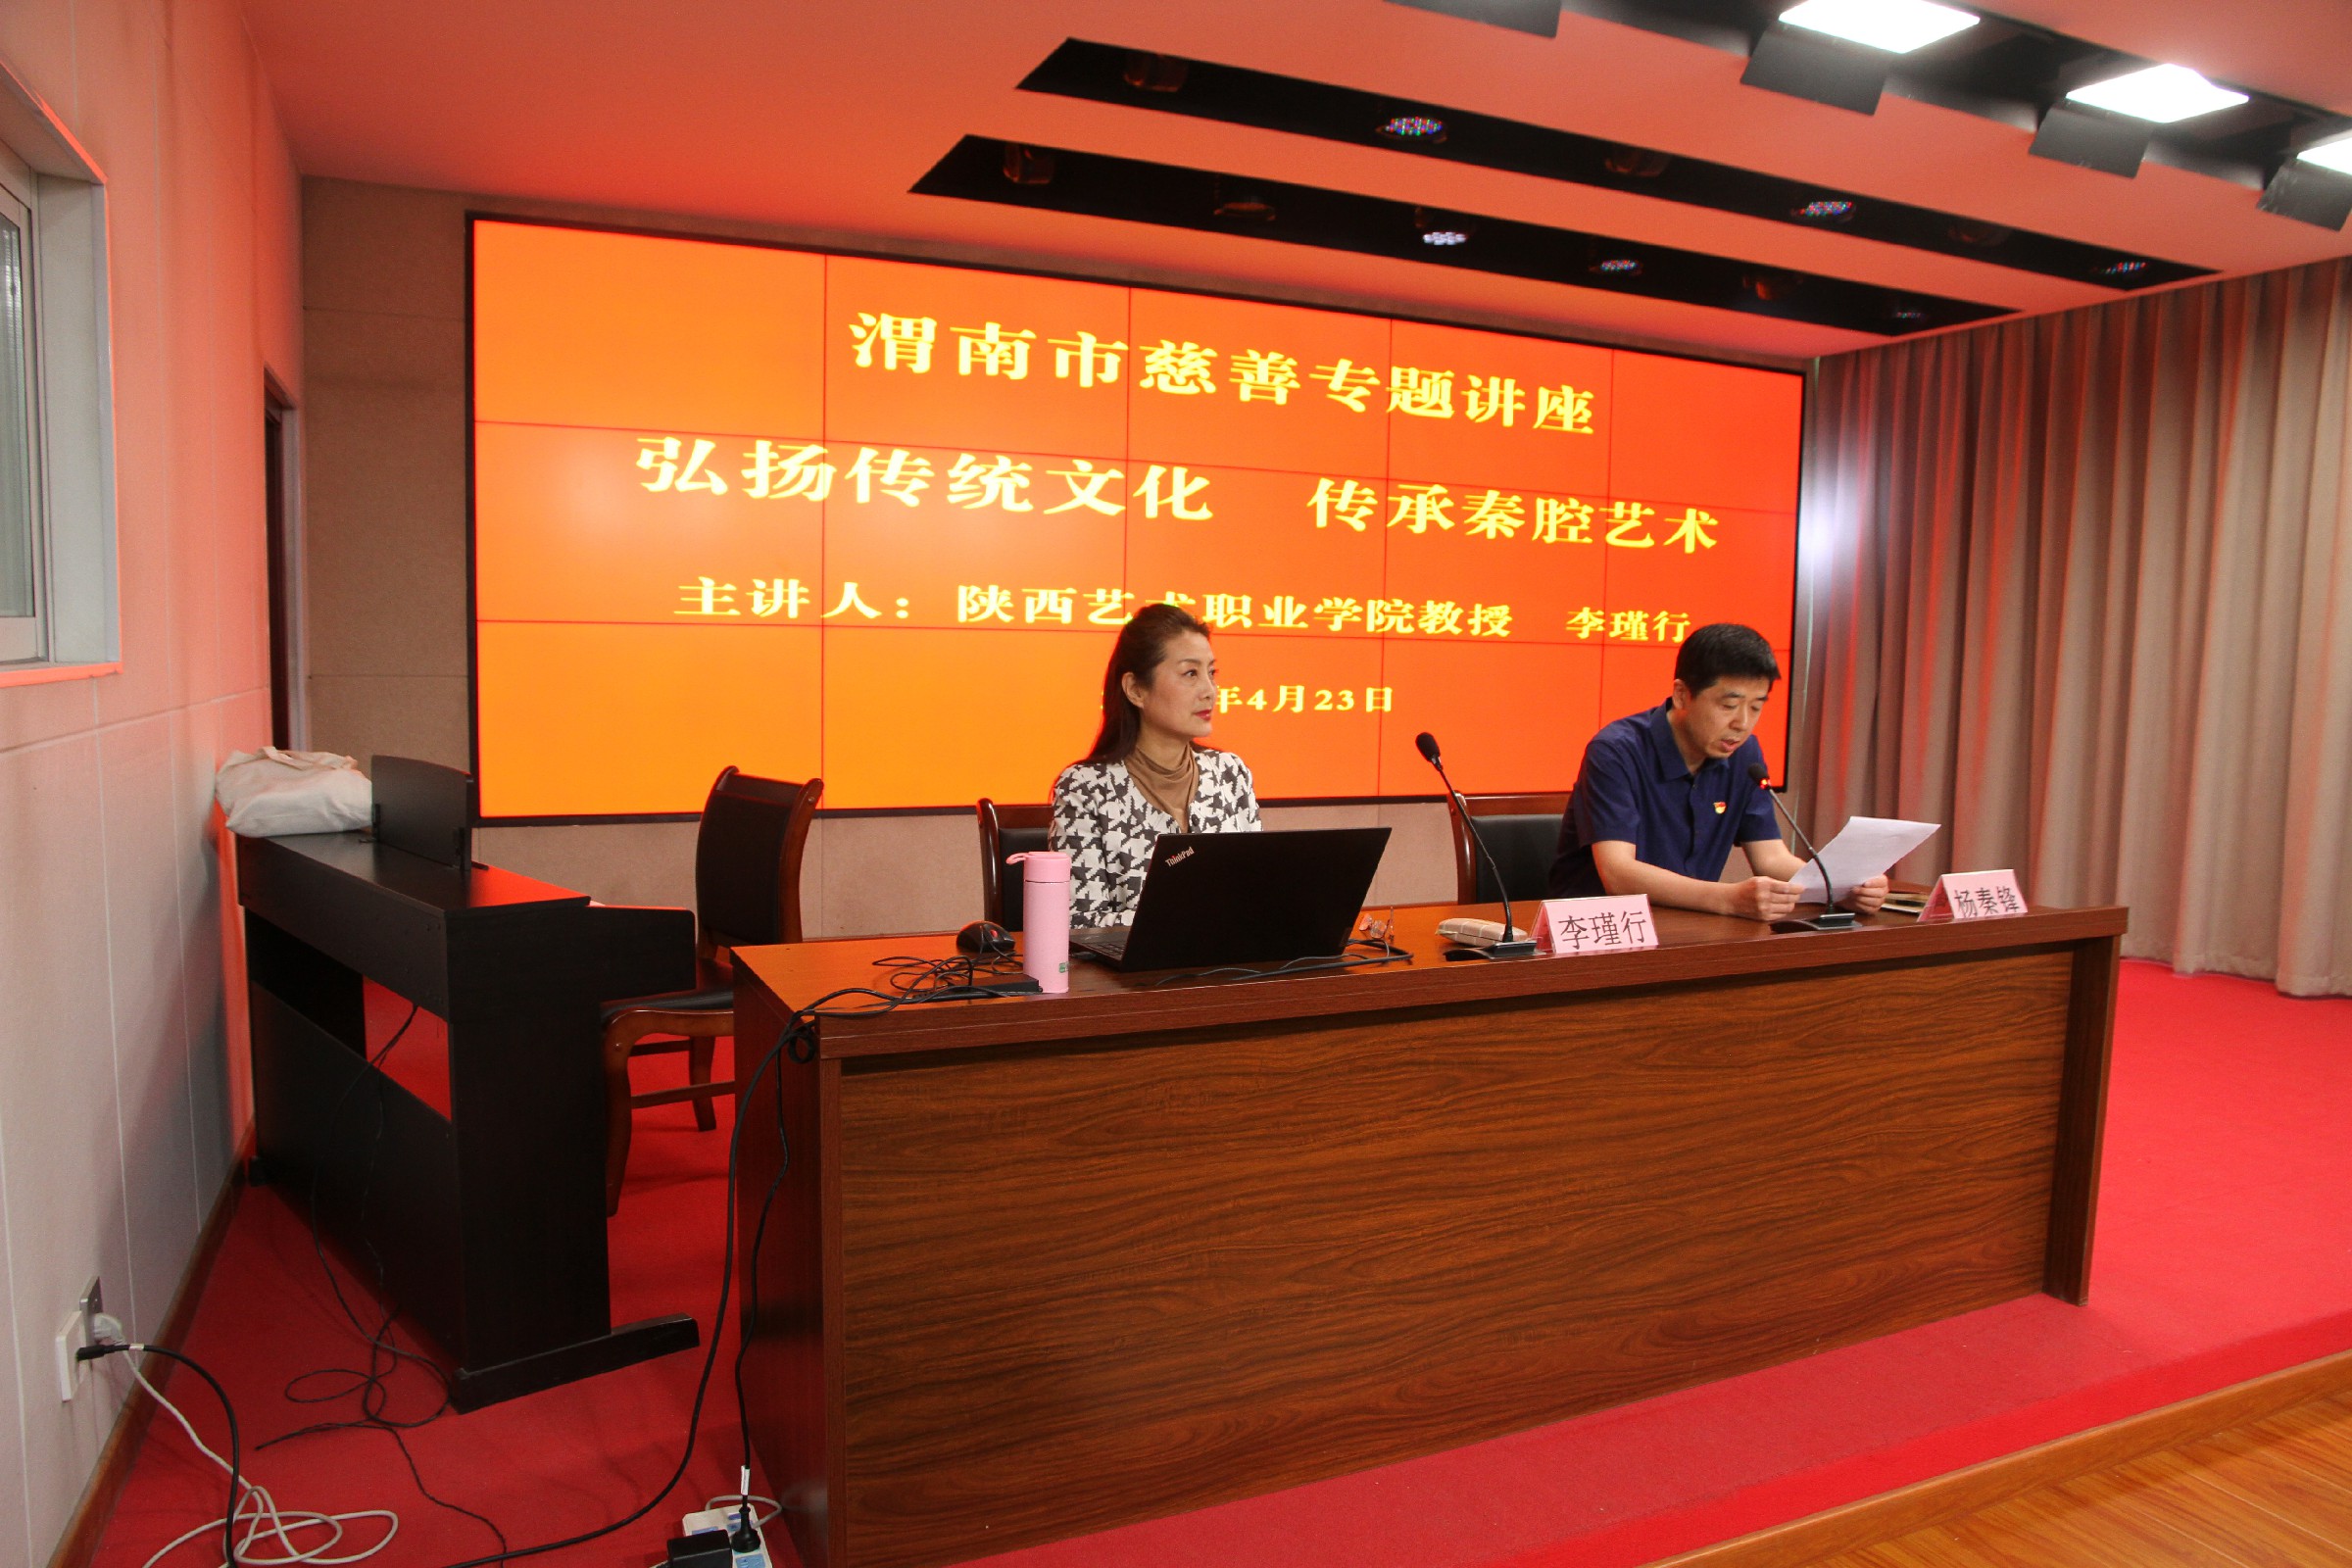 渭南市老年大学 渭南慈善老年大学举办慈善专题讲座